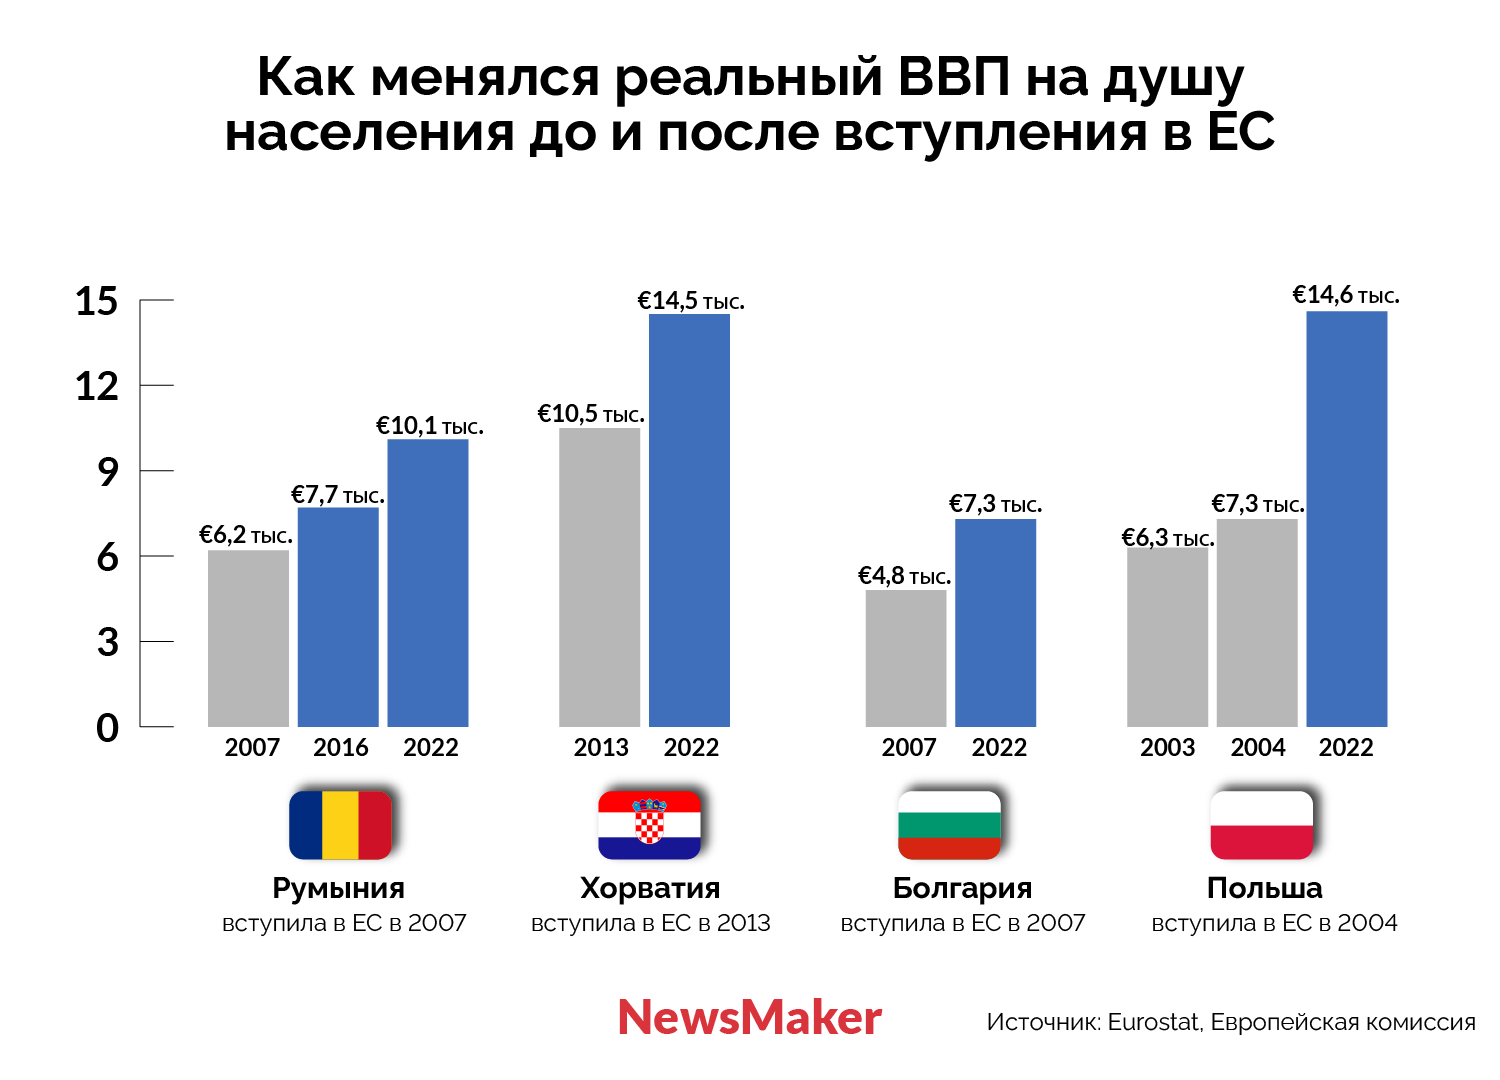 Что ждет экономику Молдовы в ЕС? Рассказываем на примере Румынии, Болгарии, Польши и Хорватии